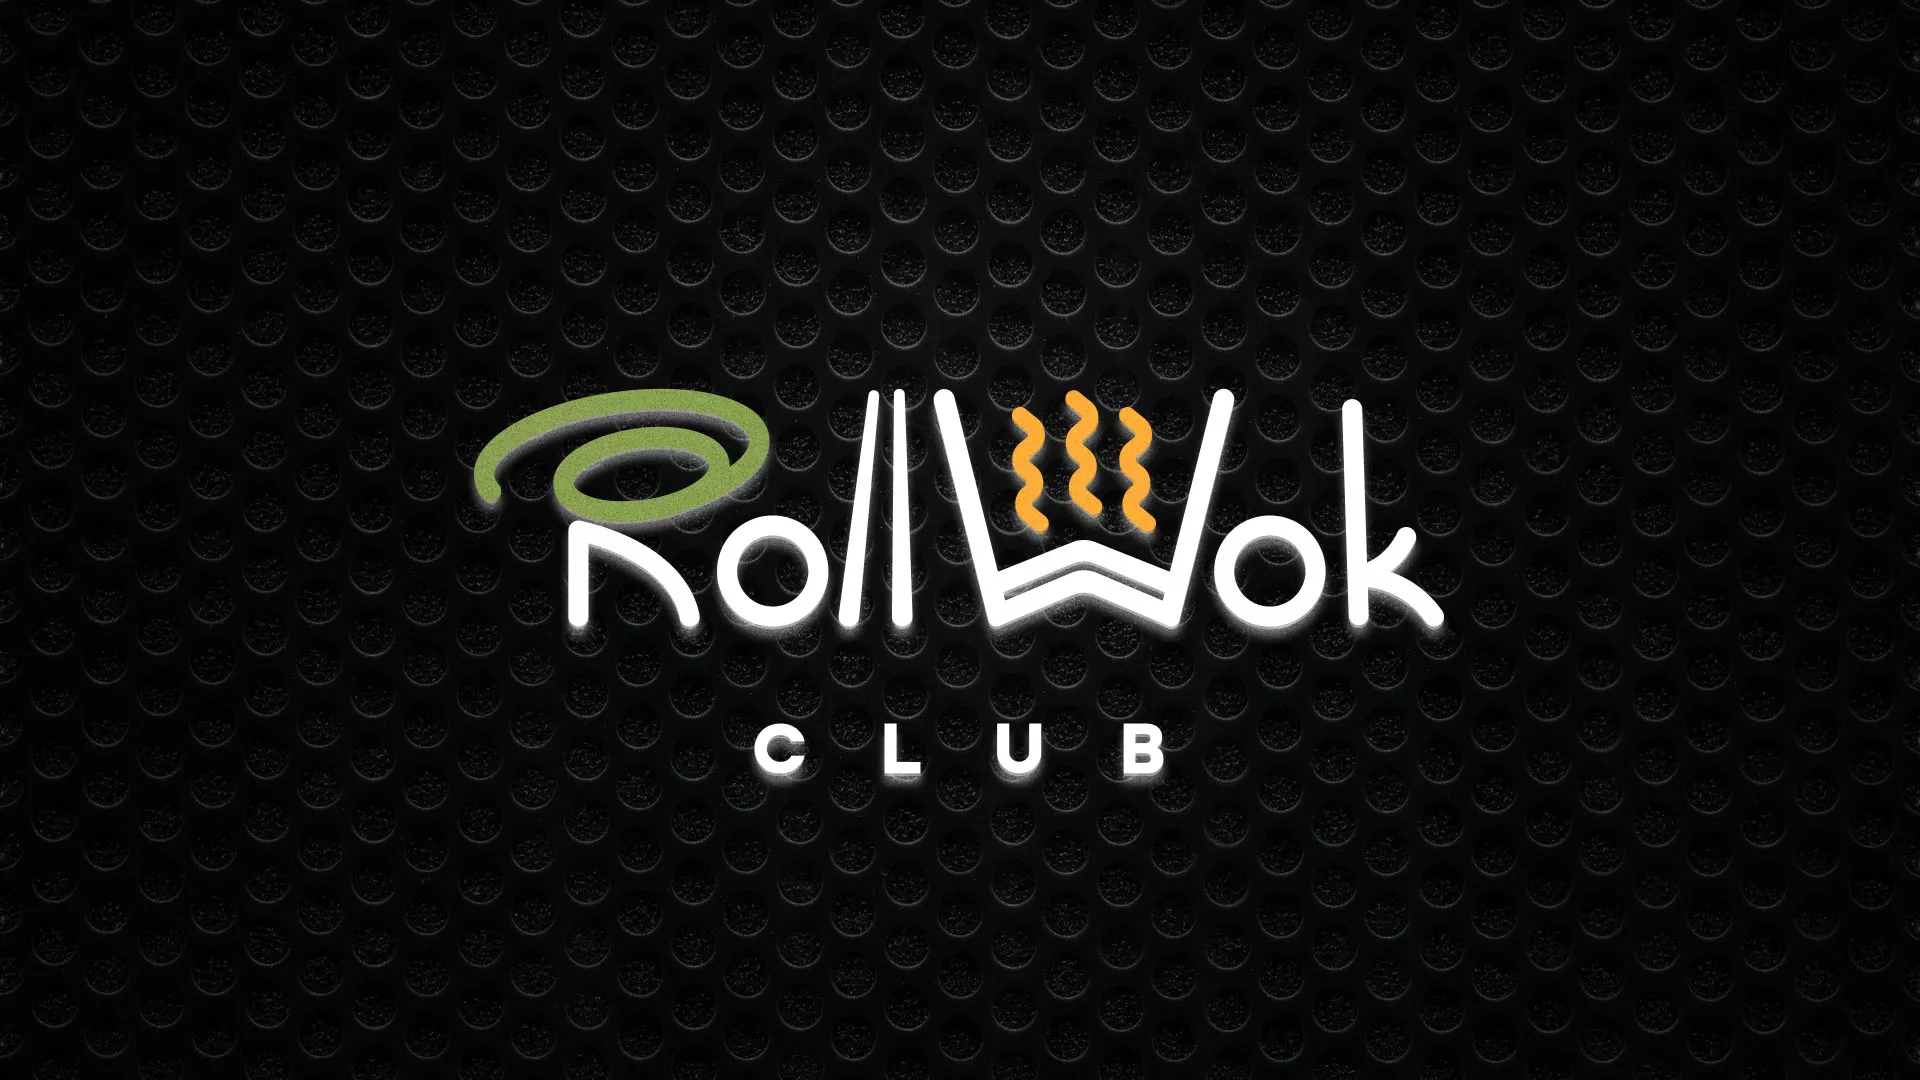 Брендирование торговых точек суши-бара «Roll Wok Club» в Екатеринбурге